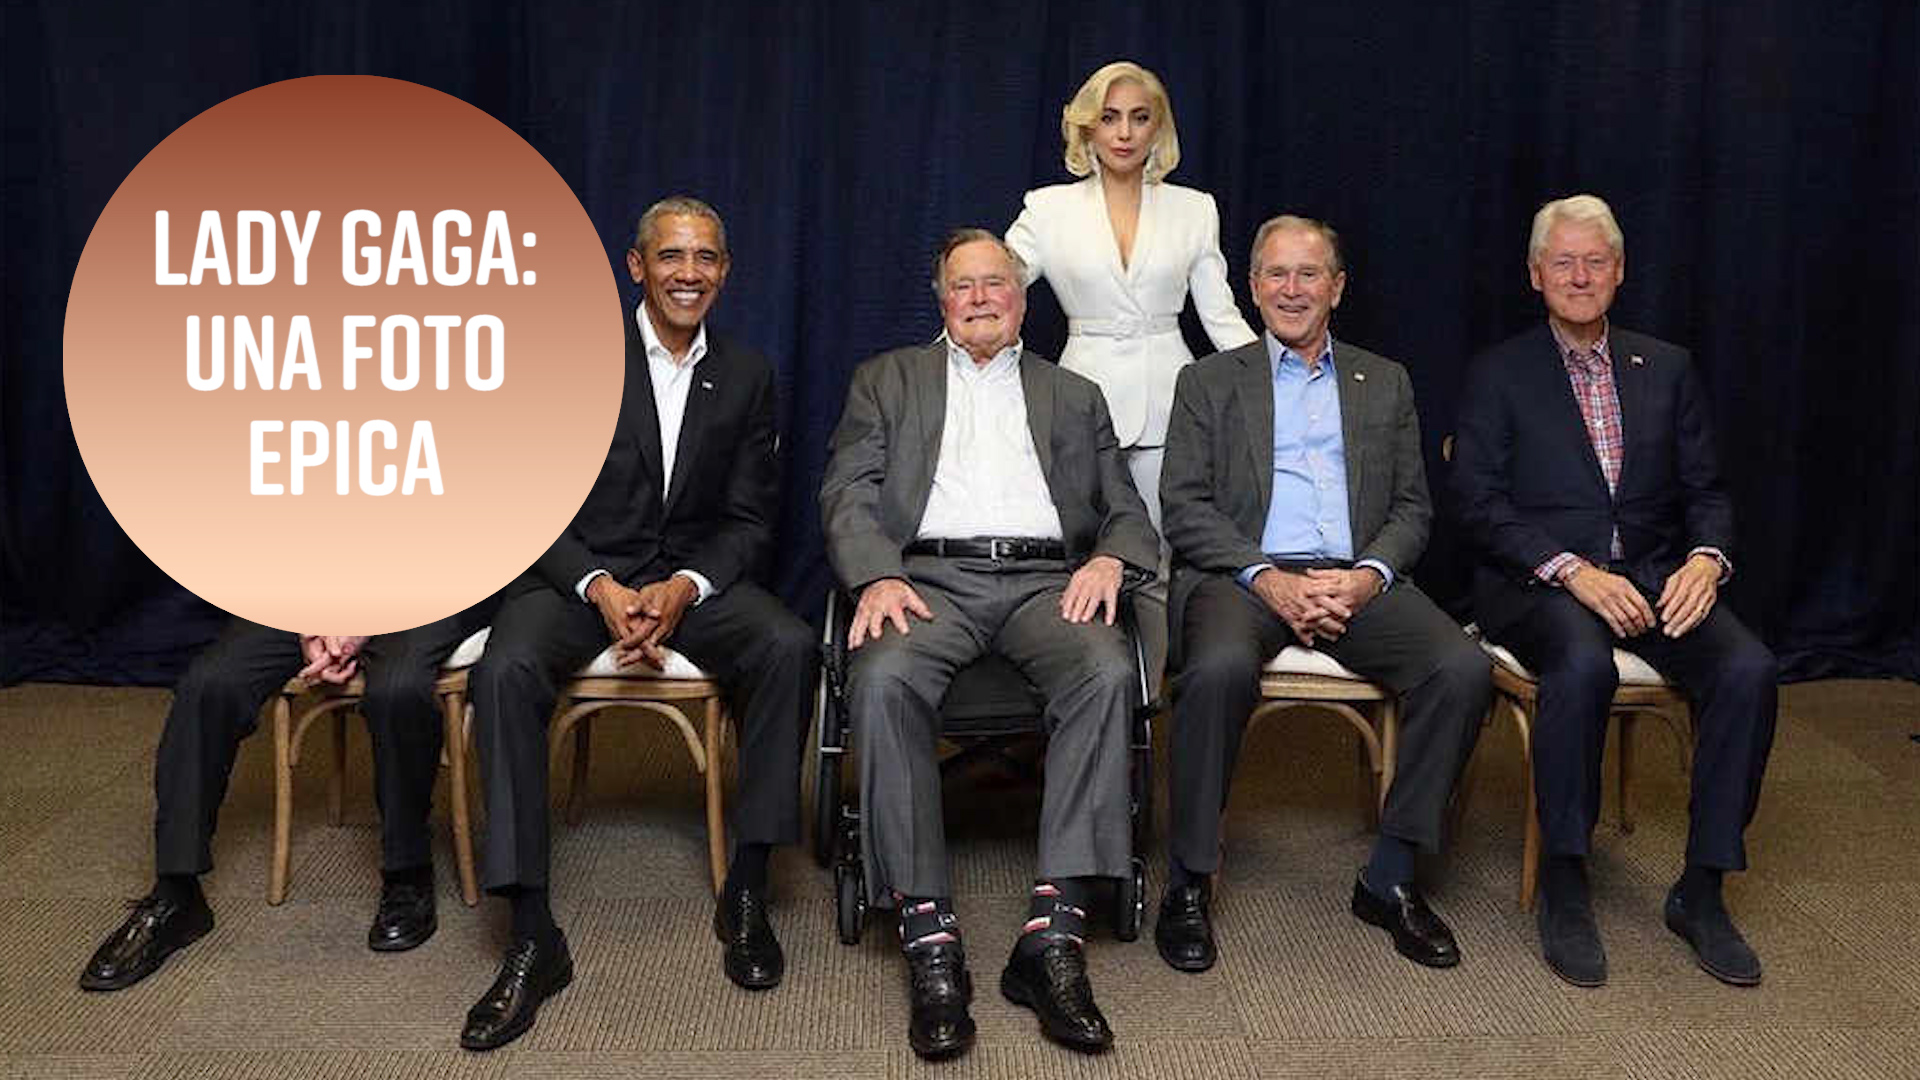 Lady Gaga e' la nuova presidente degli Usa?